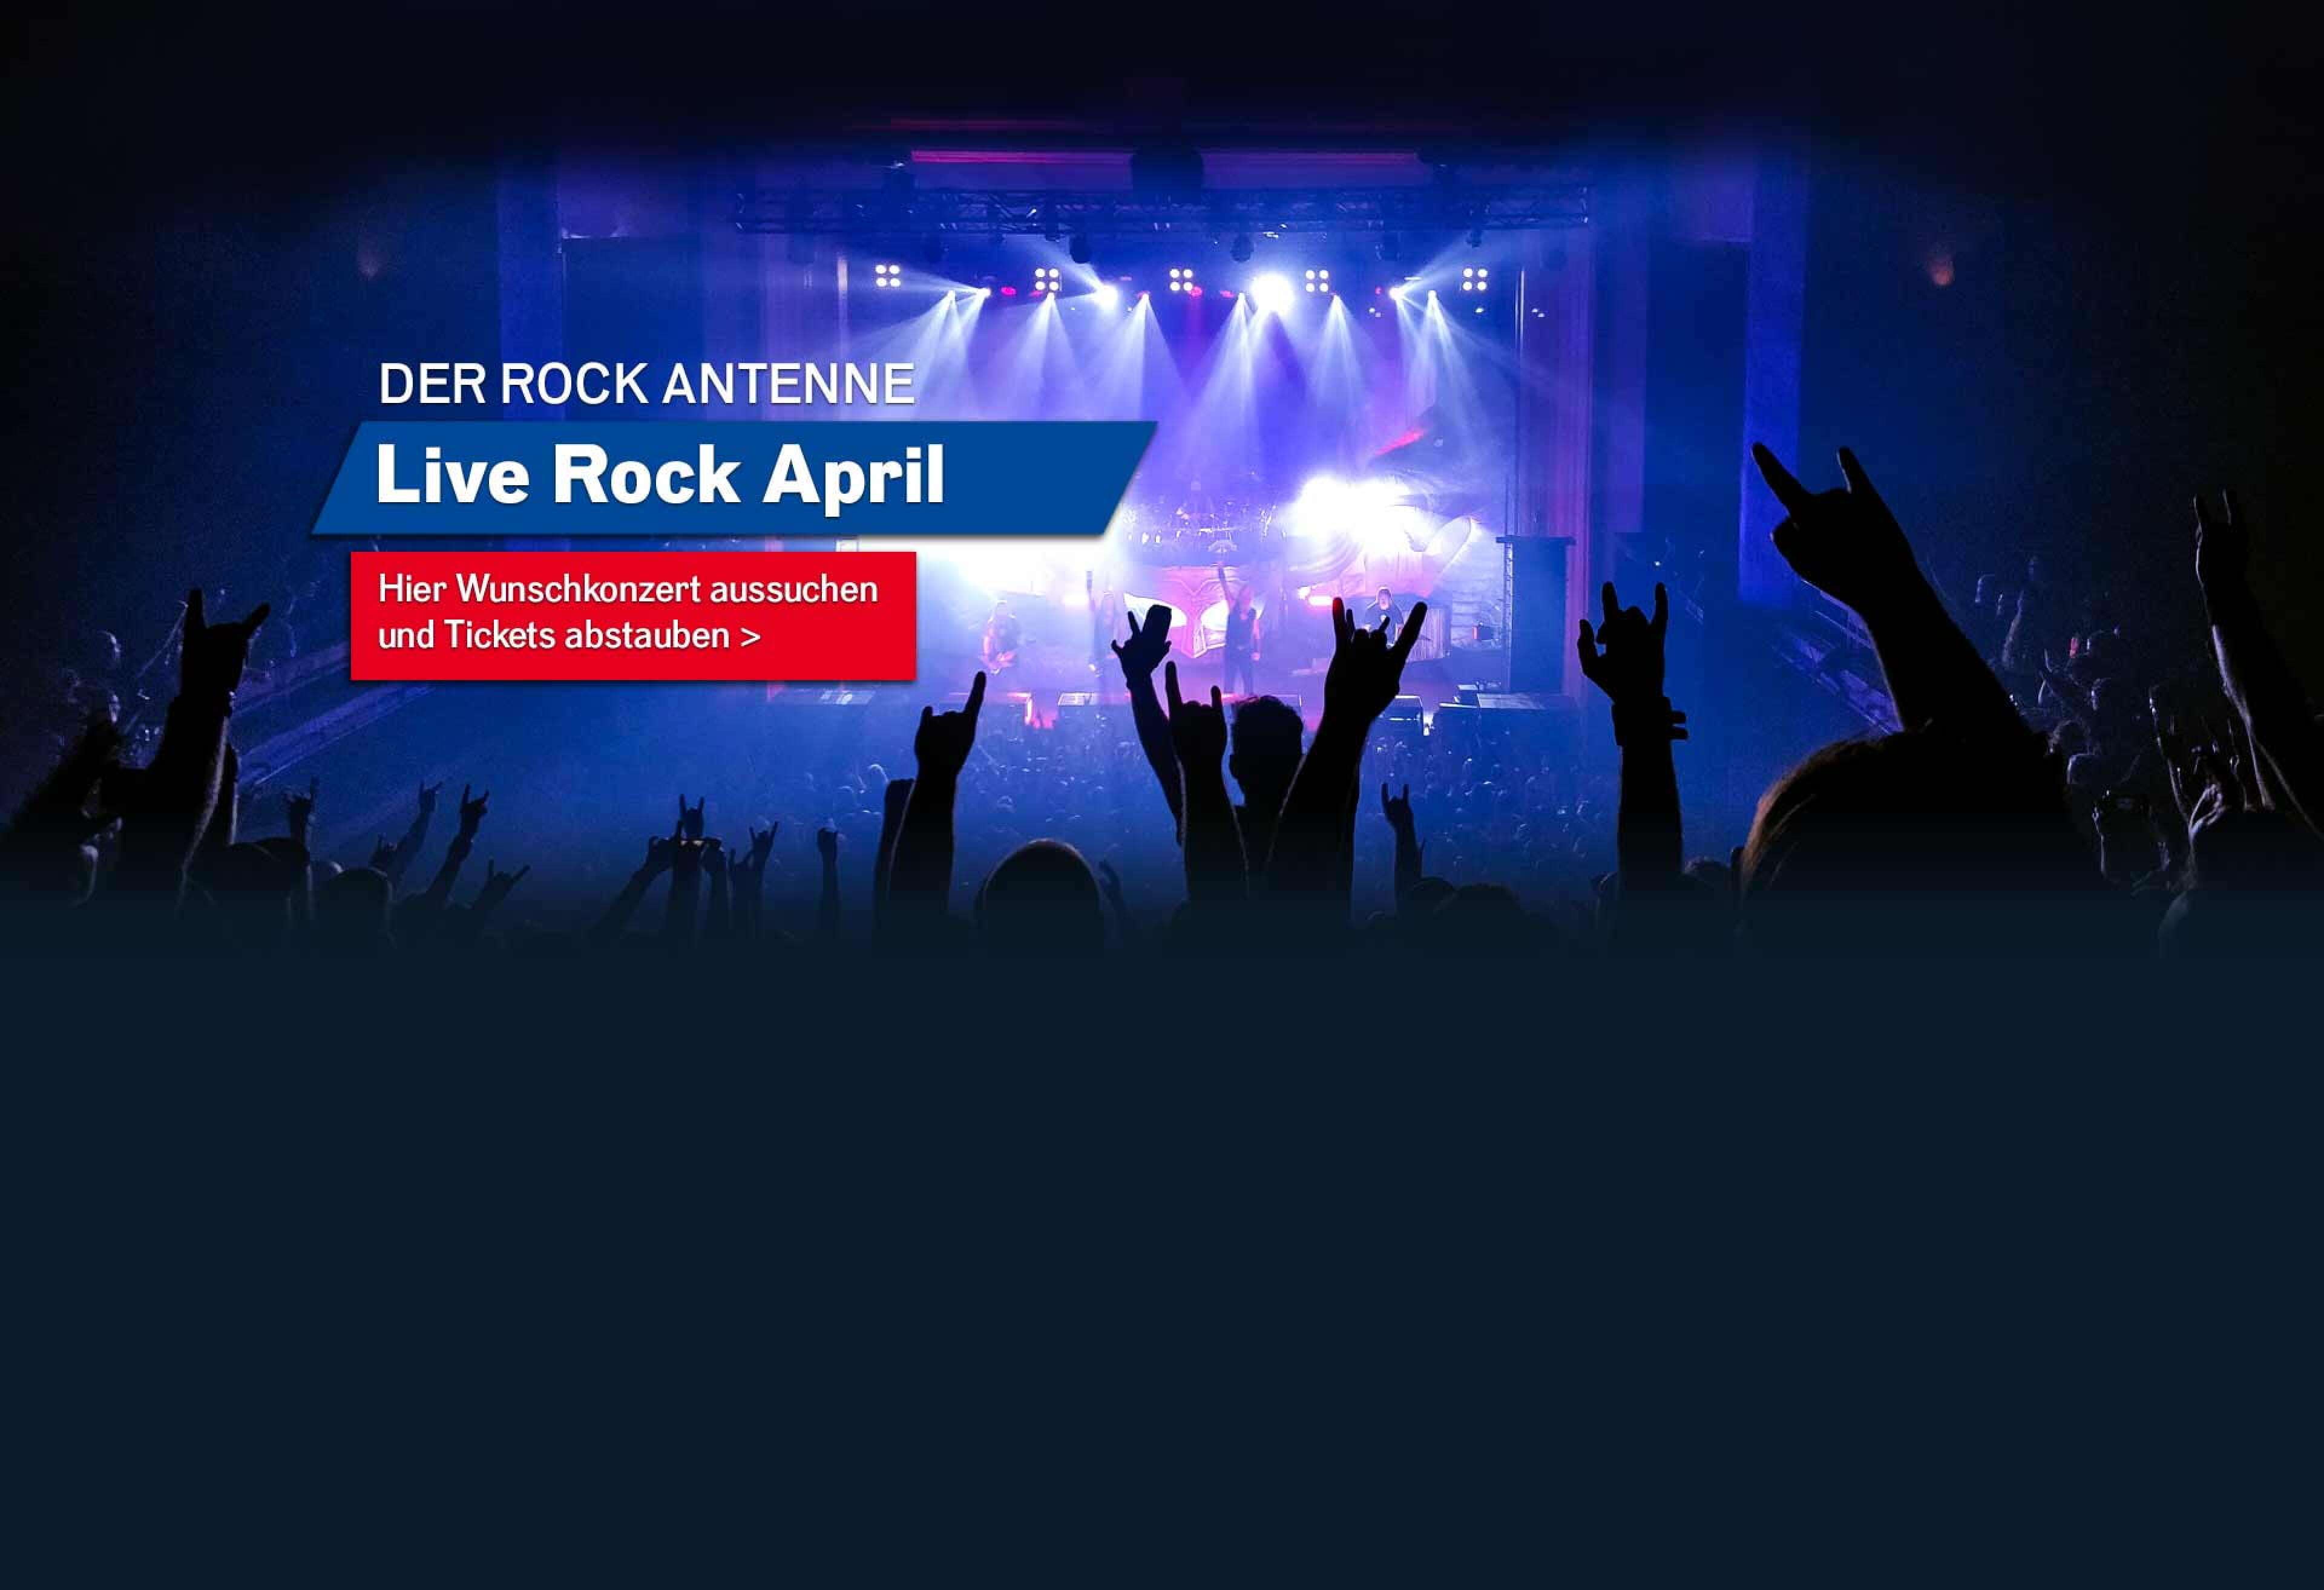 Bild eines Konzert-Publikums mit Blick auf die Bühne mit Aufschrift ROCK ANTENNE Live Rock April - hier Wunschkonzert aussuchen und Tickets abstauben!